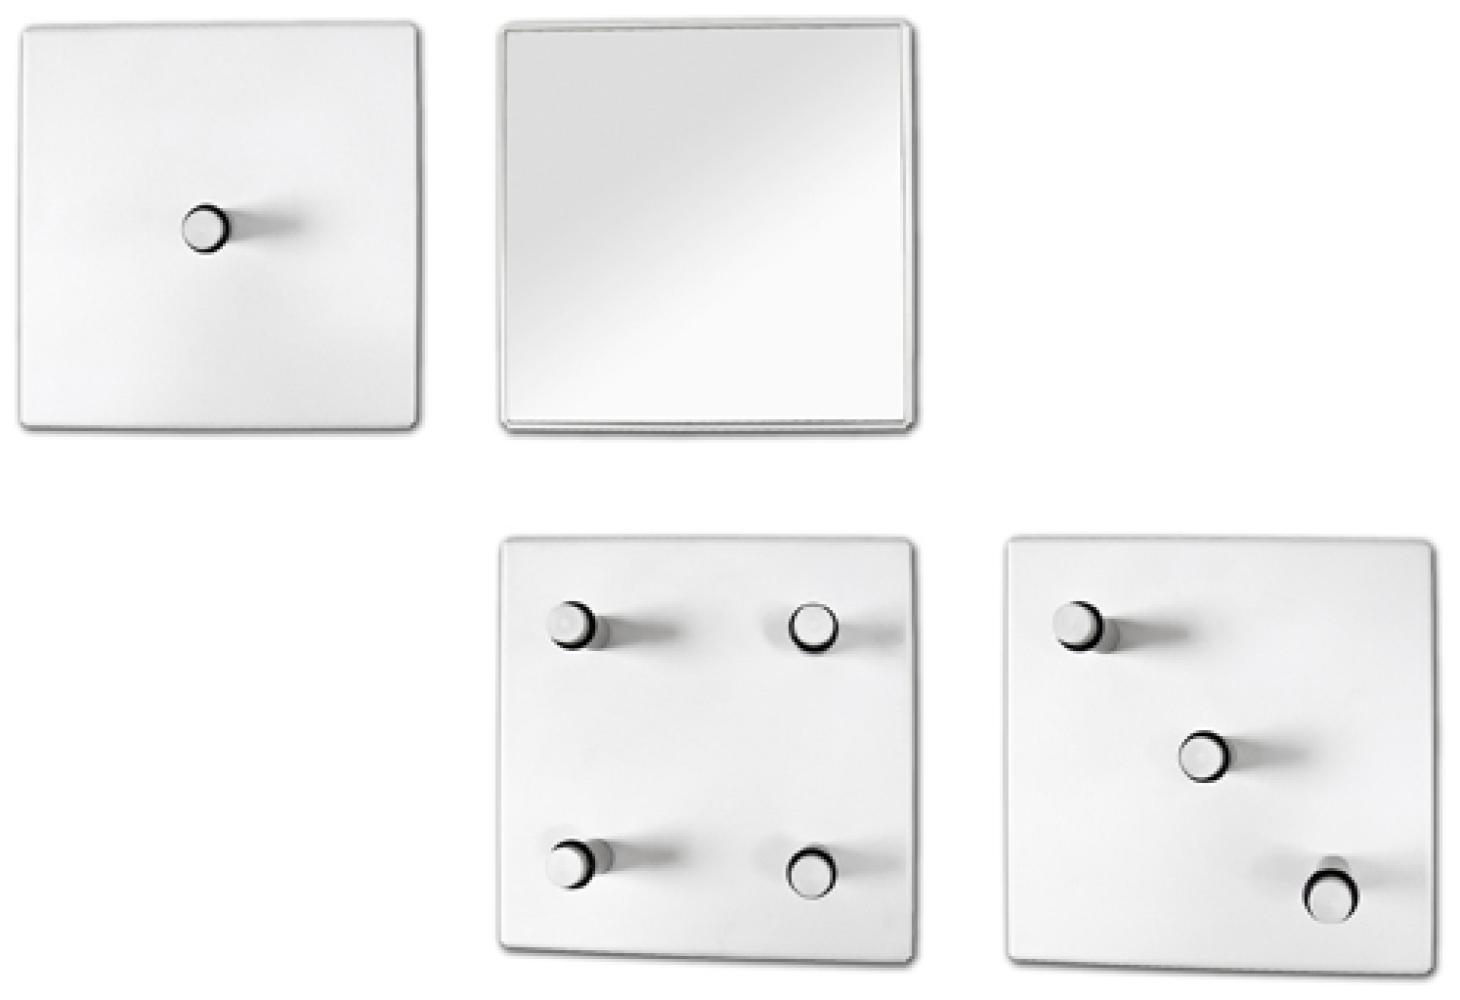 Garderobenhaken >Domino< in Weiß aus Metall, Spiegelglas - 15x15x6cm (BxHxT) Bild 1